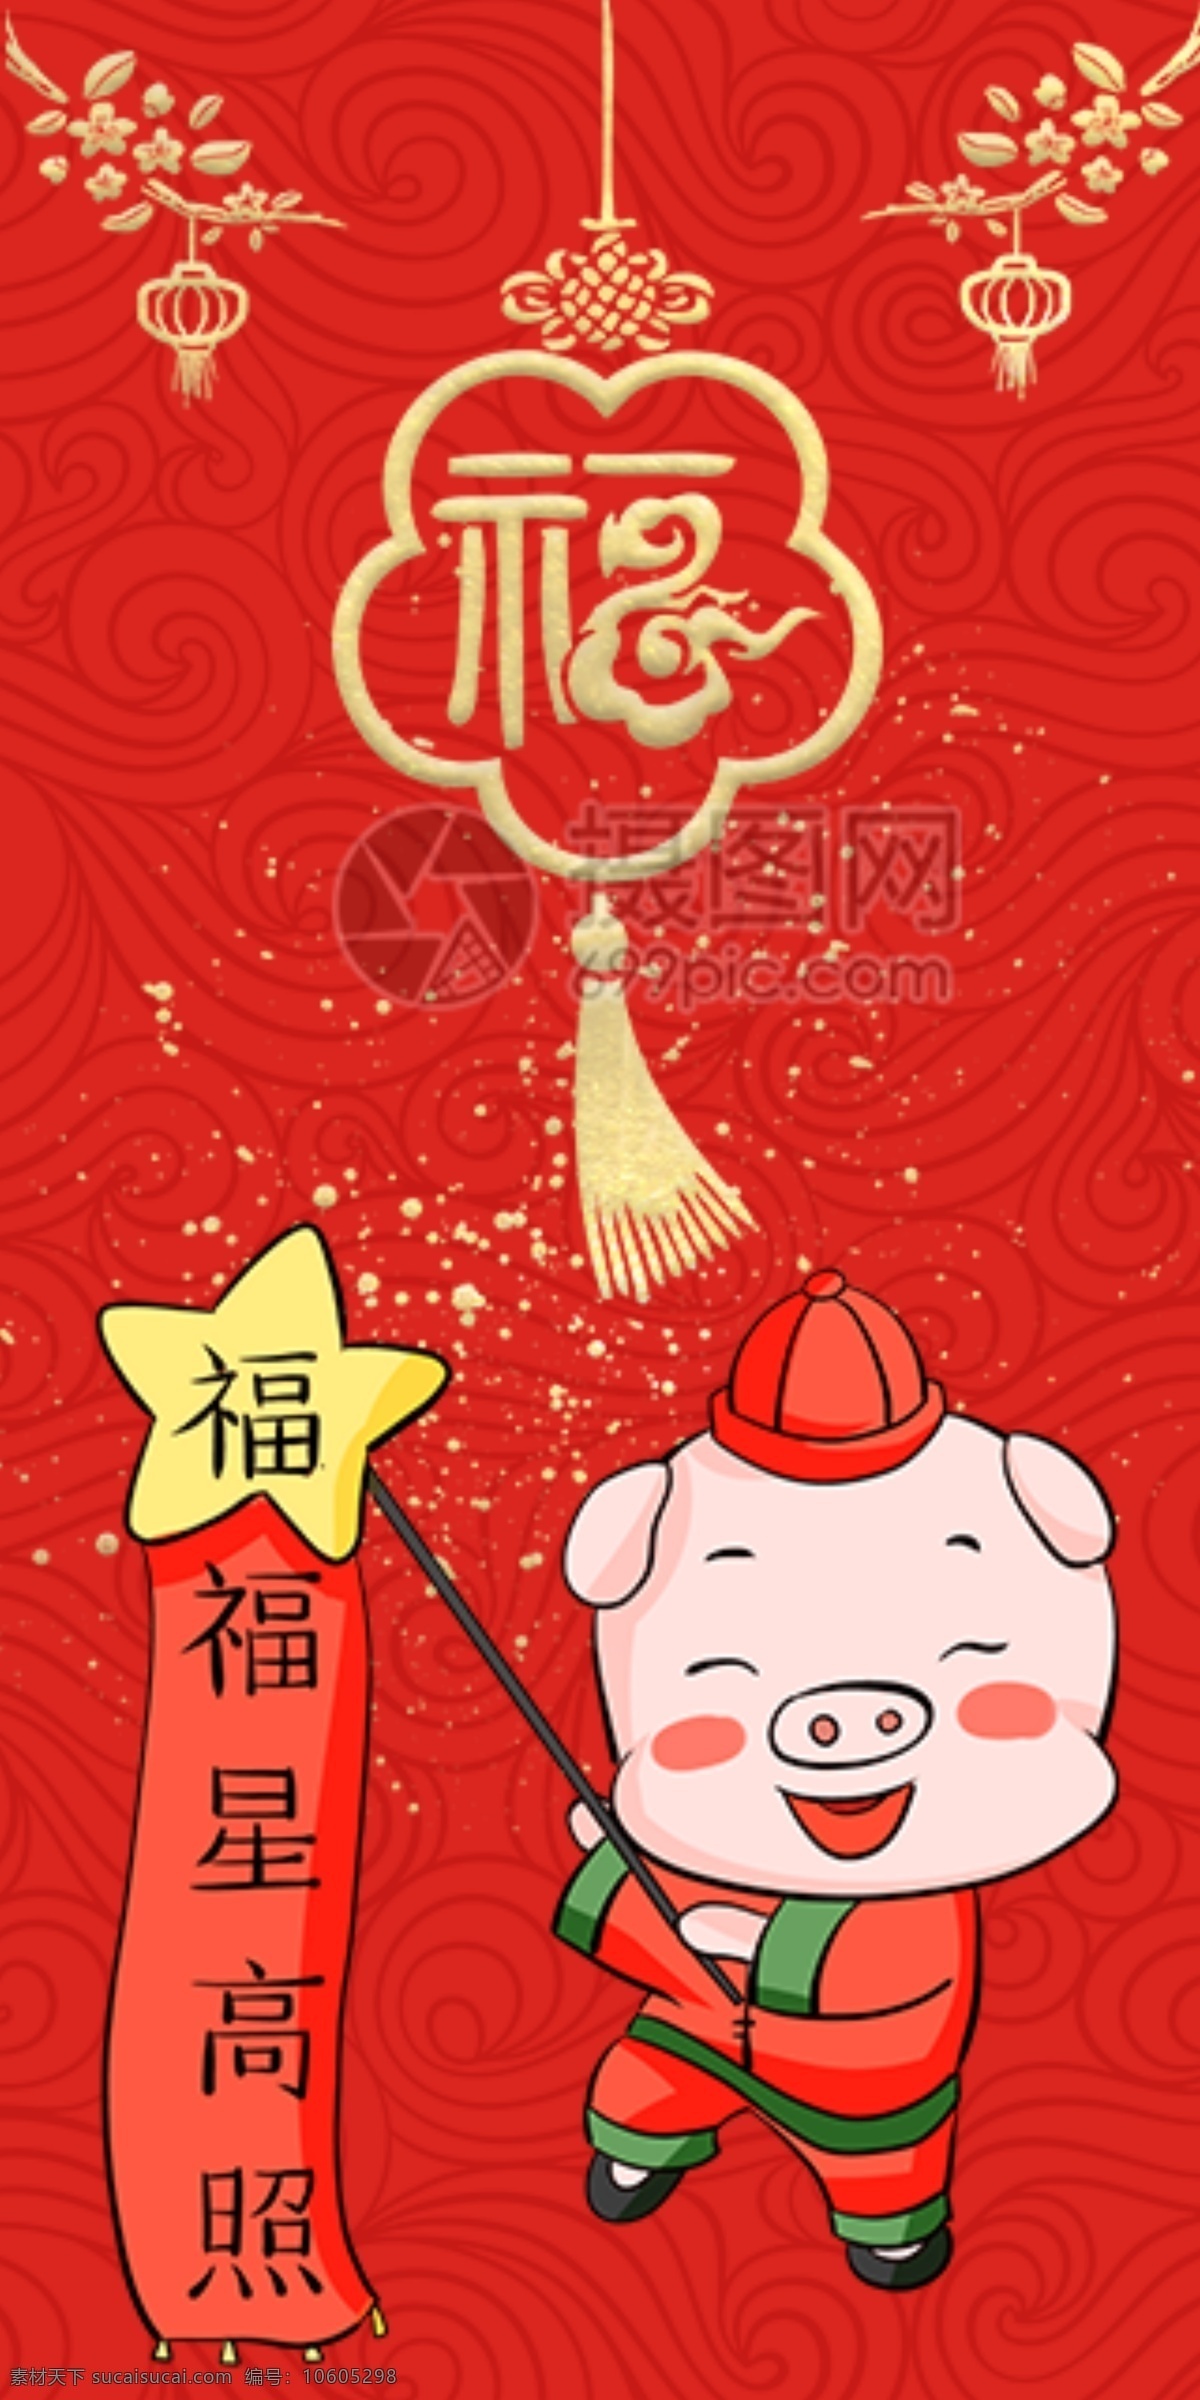 2019 猪年 新春 红包 福星高照 猪年红包 新春红包 红包素材 红包设计 新年红 新年红包